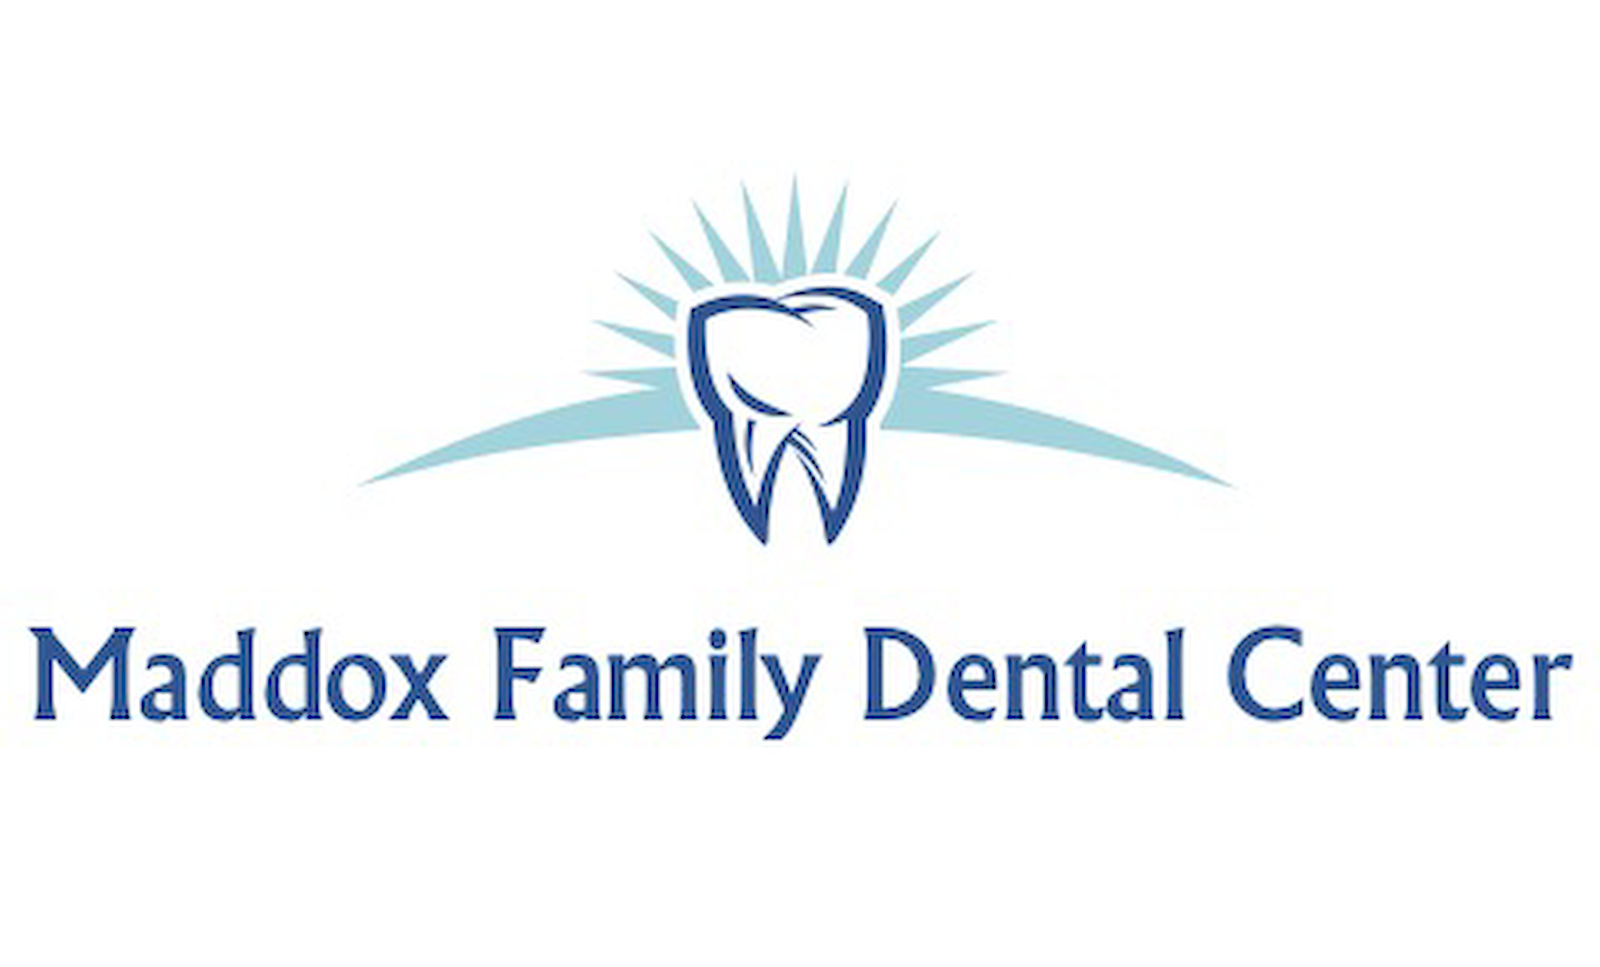 Maddox Family Dental Center